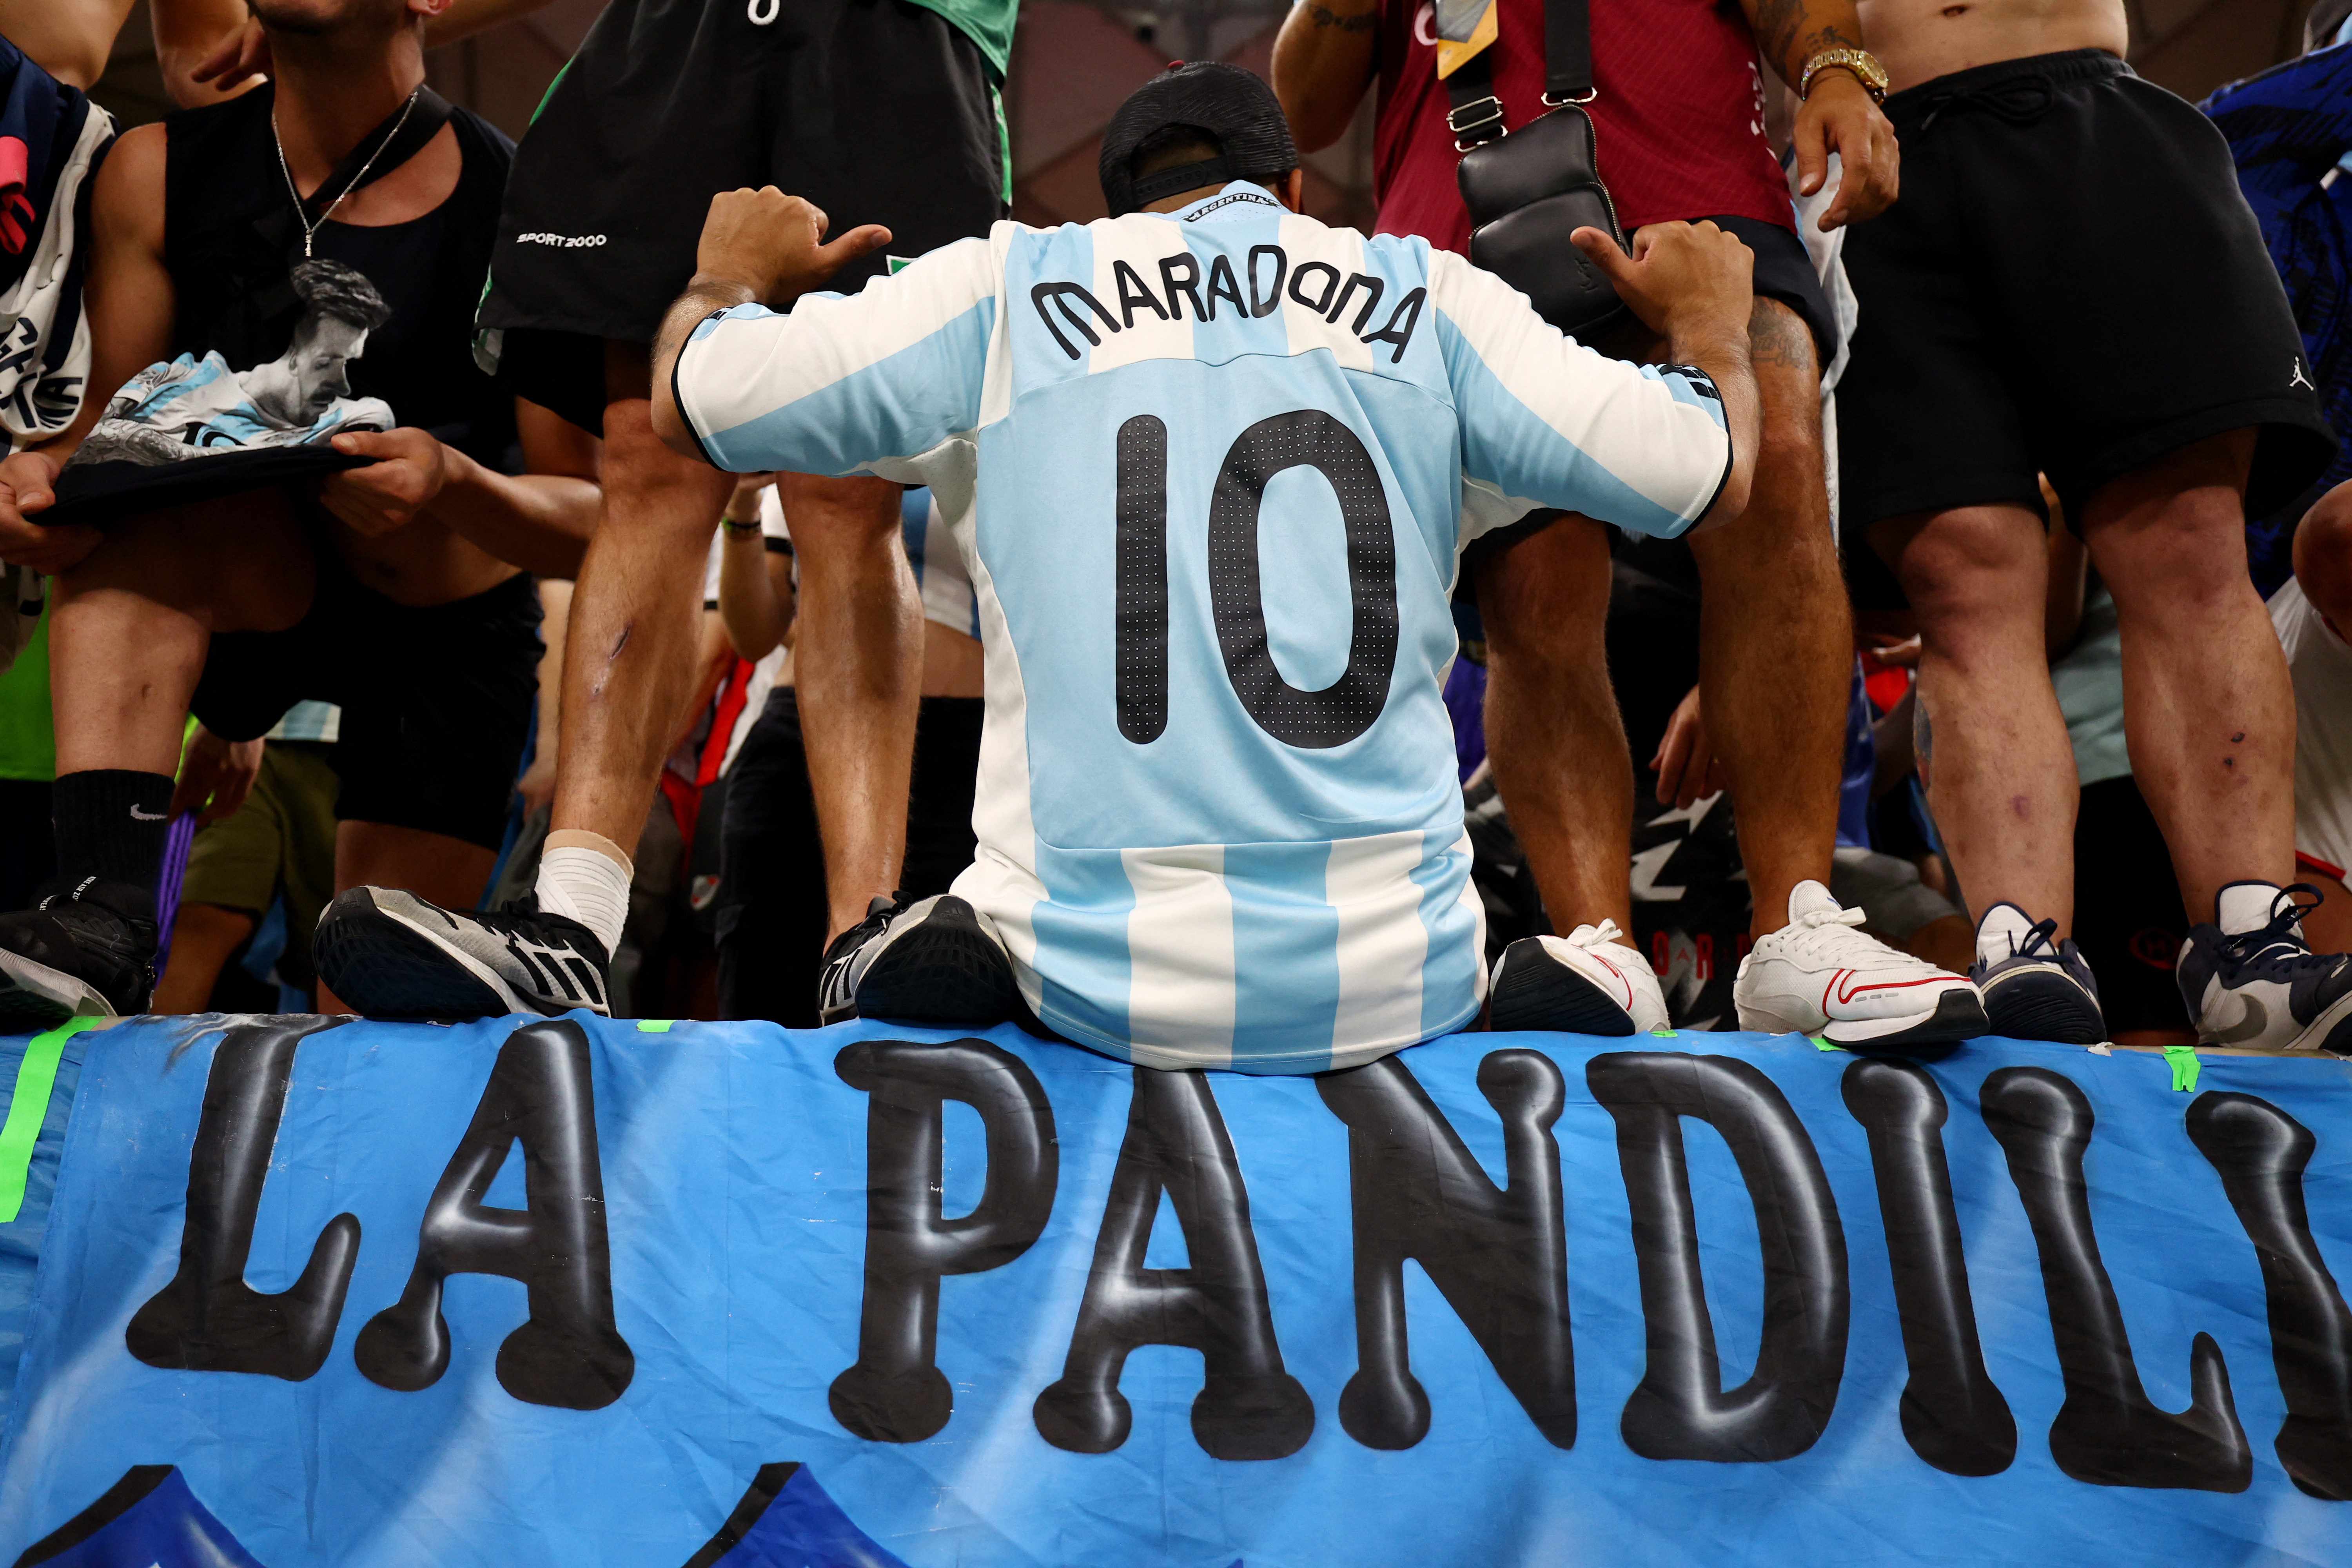 Un hincha con la camiseta de Maradona en las tribunas del estadio Lusail (REUTERS/Molly Darlington)